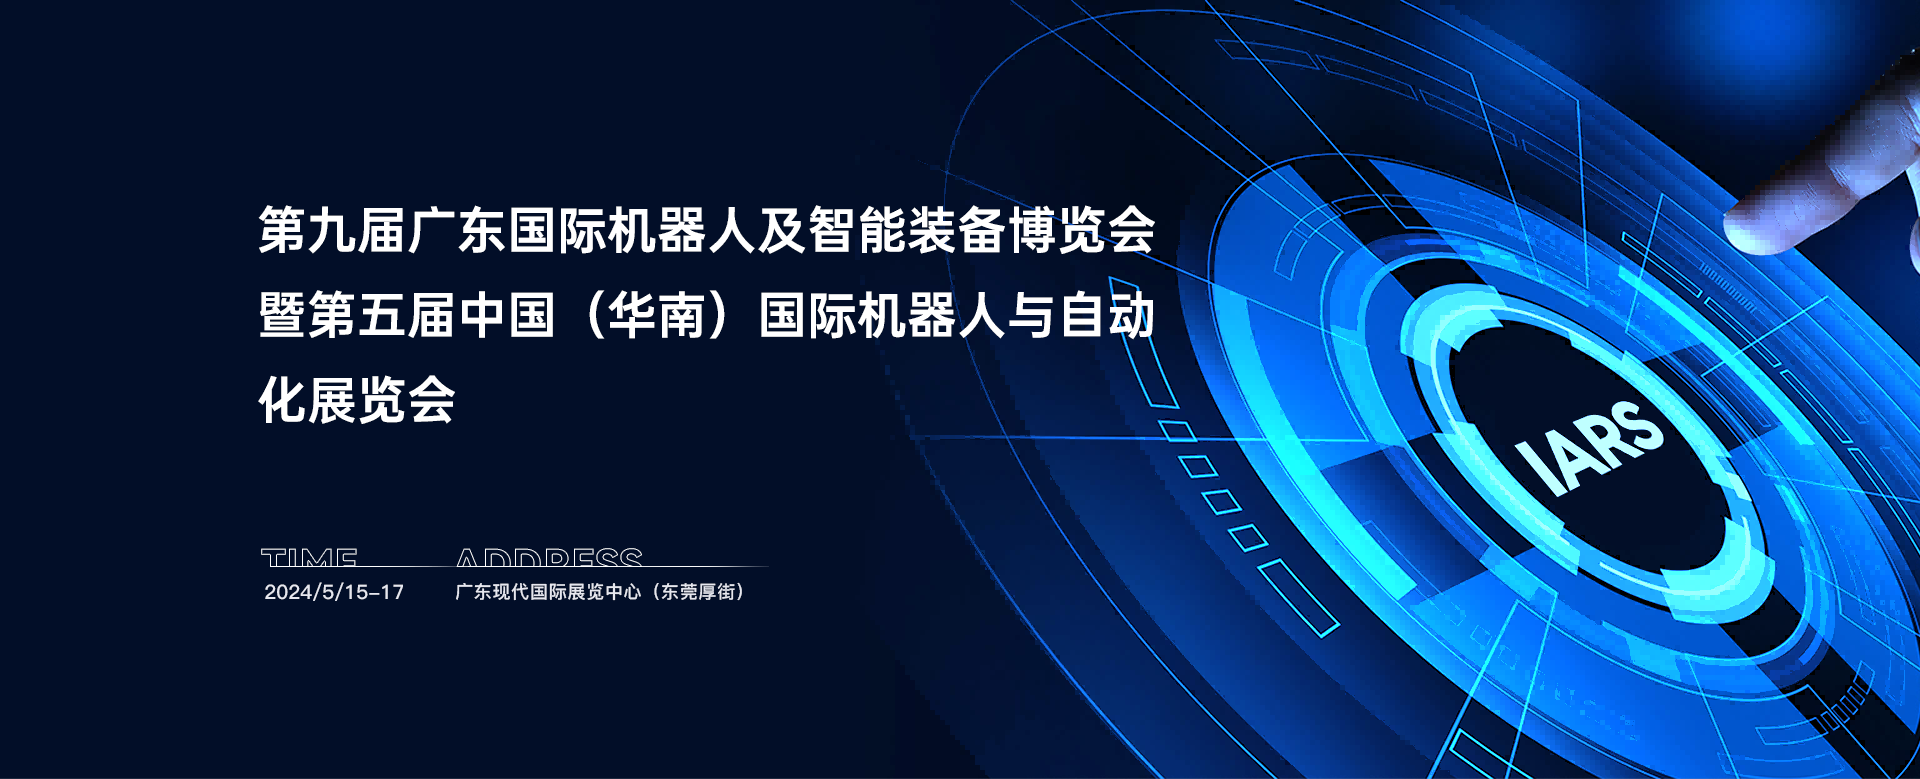 2024第五届中国(华南) 国际机器人与自动化展览会